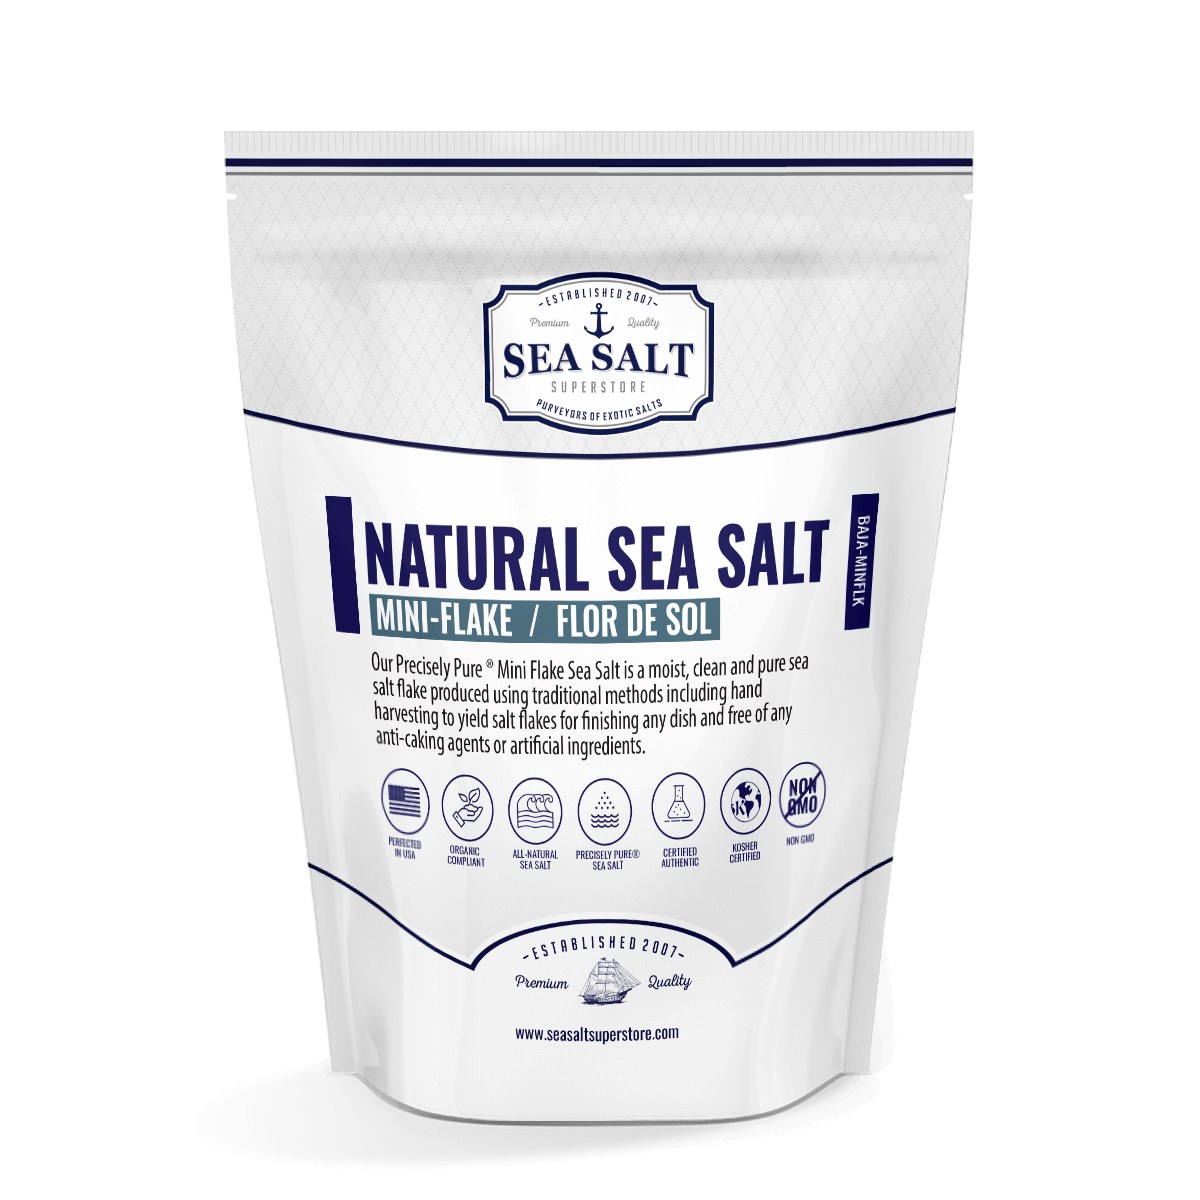 Fleur De Sel (Flor de Sol) Sea Salt - All Natural, No Additives